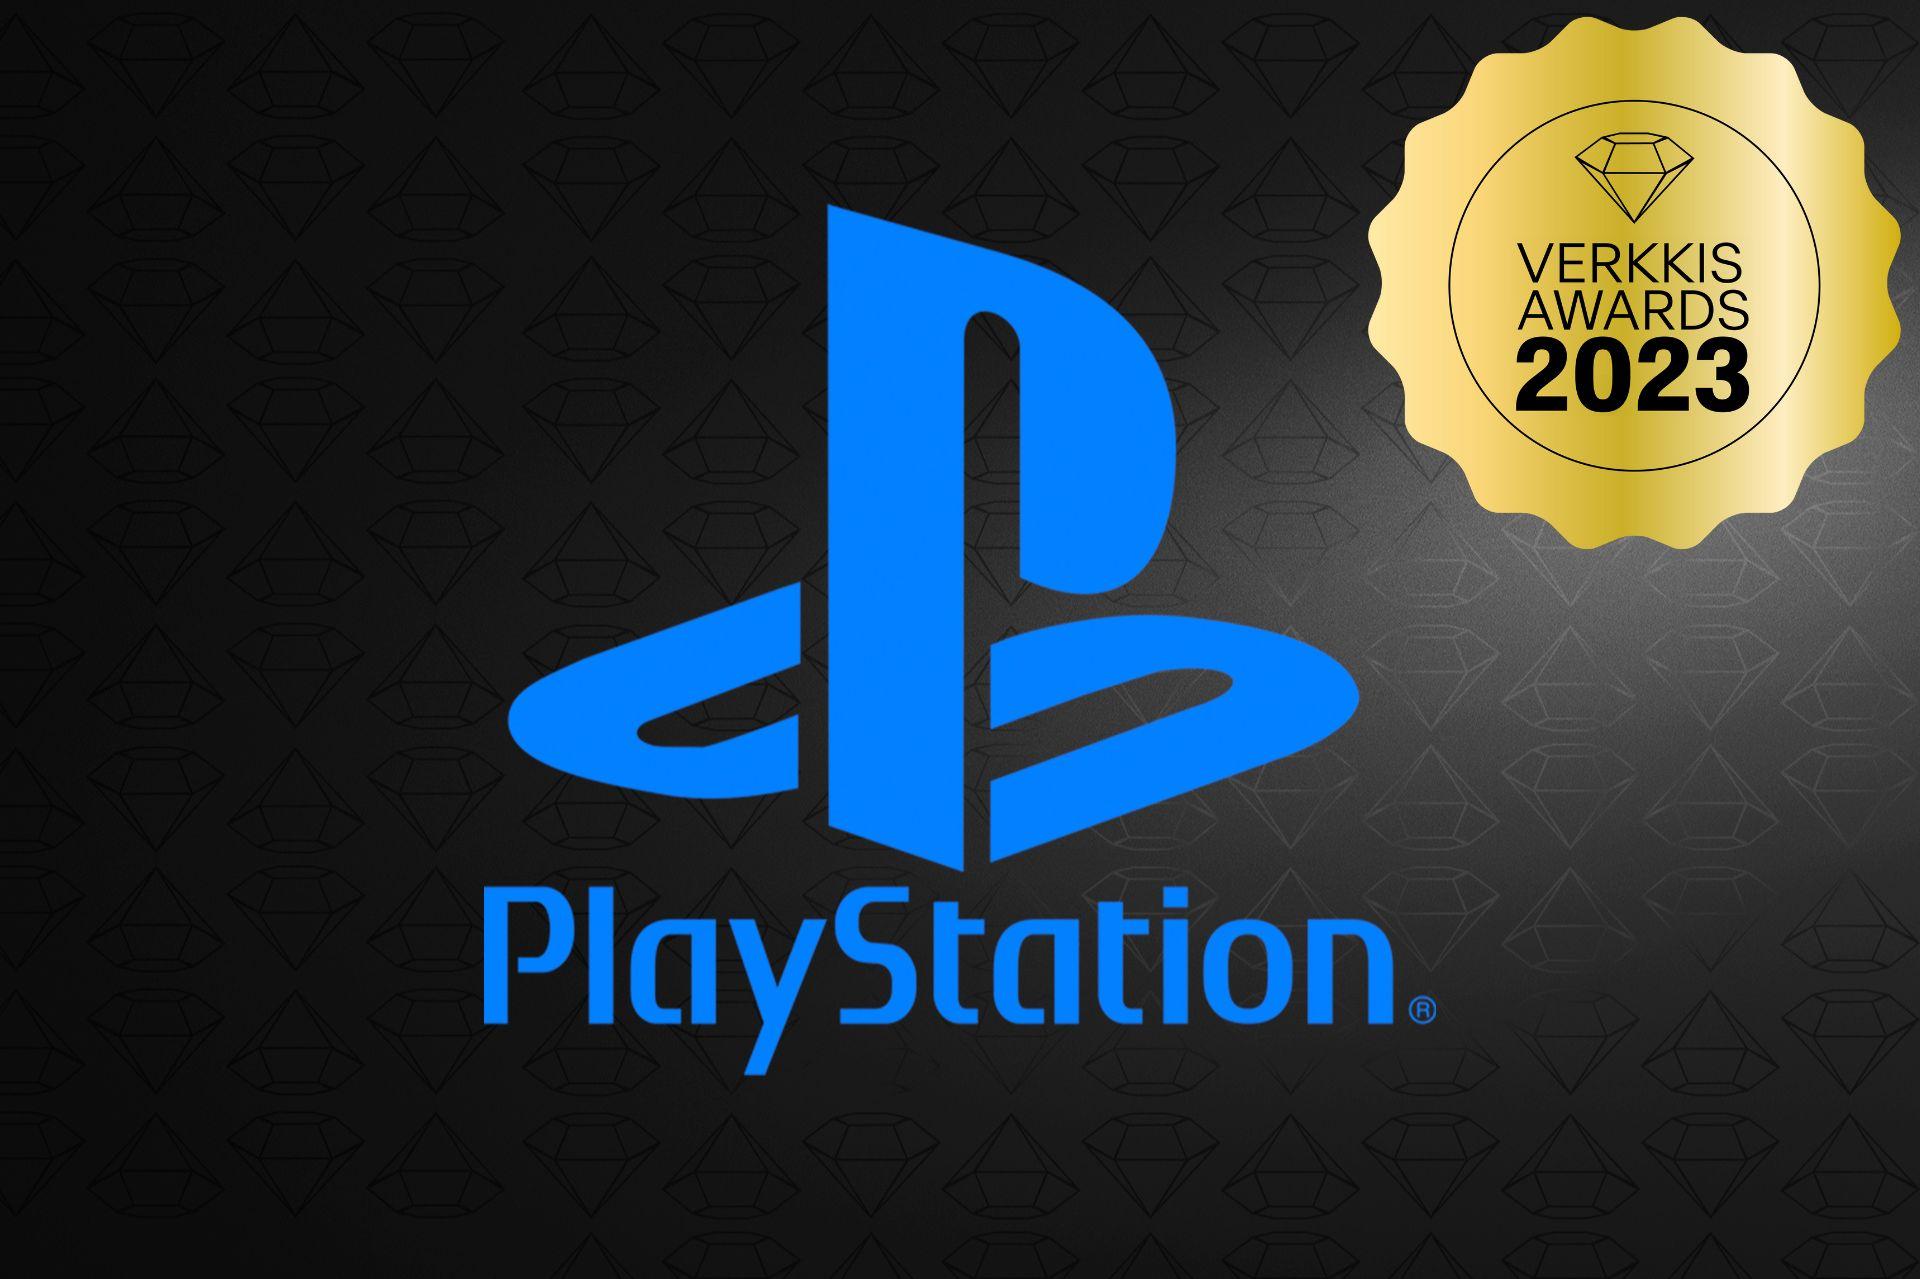 Sony Playstation - Verkkis Awards 2023 voittaja!